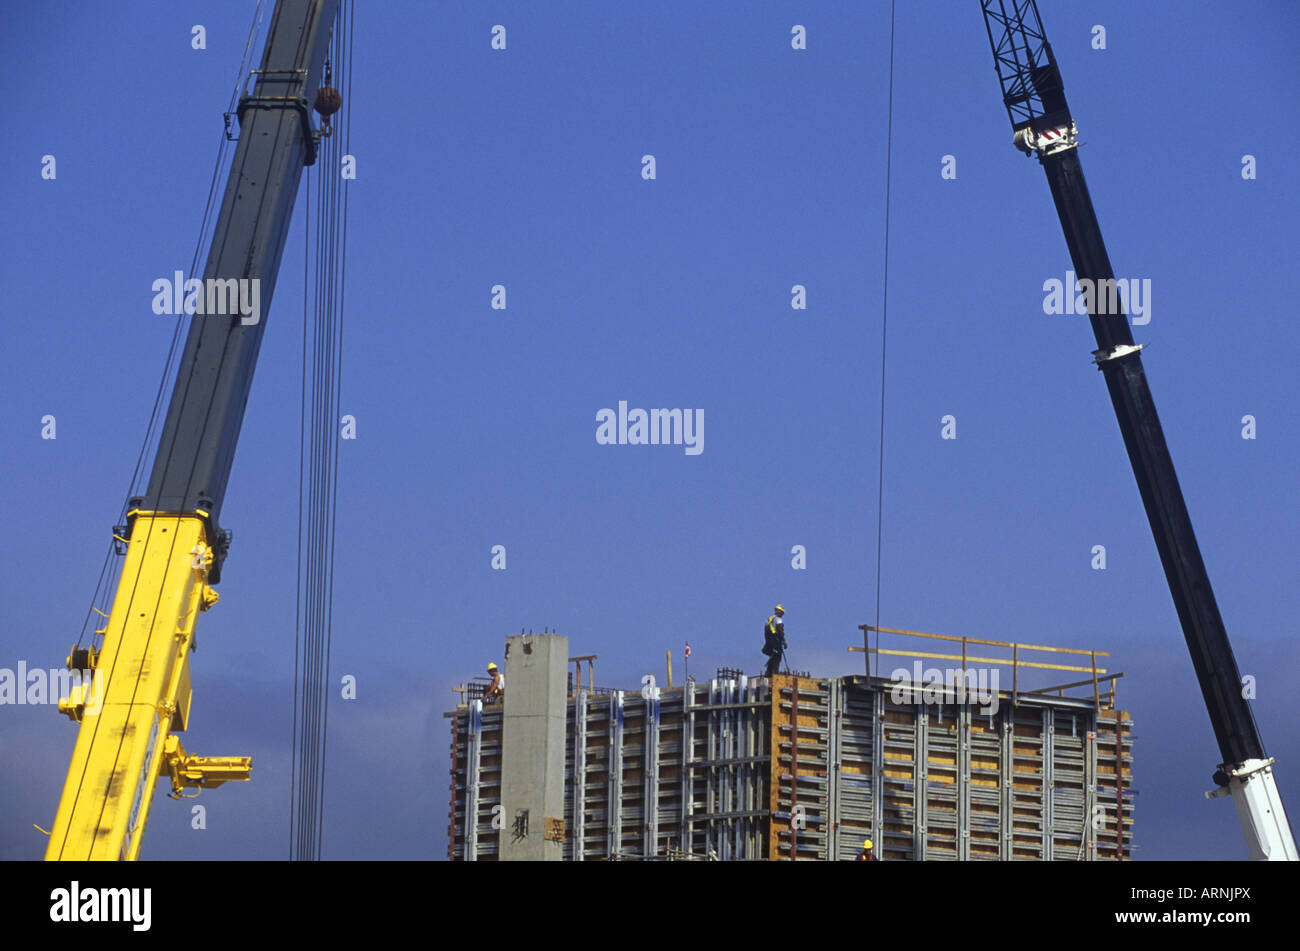 Projet de construction, le béton et l'acier, les travailleurs et les grues, contre le ciel bleu, l'île de Vancouver, Colombie-Britannique, Canada. Banque D'Images